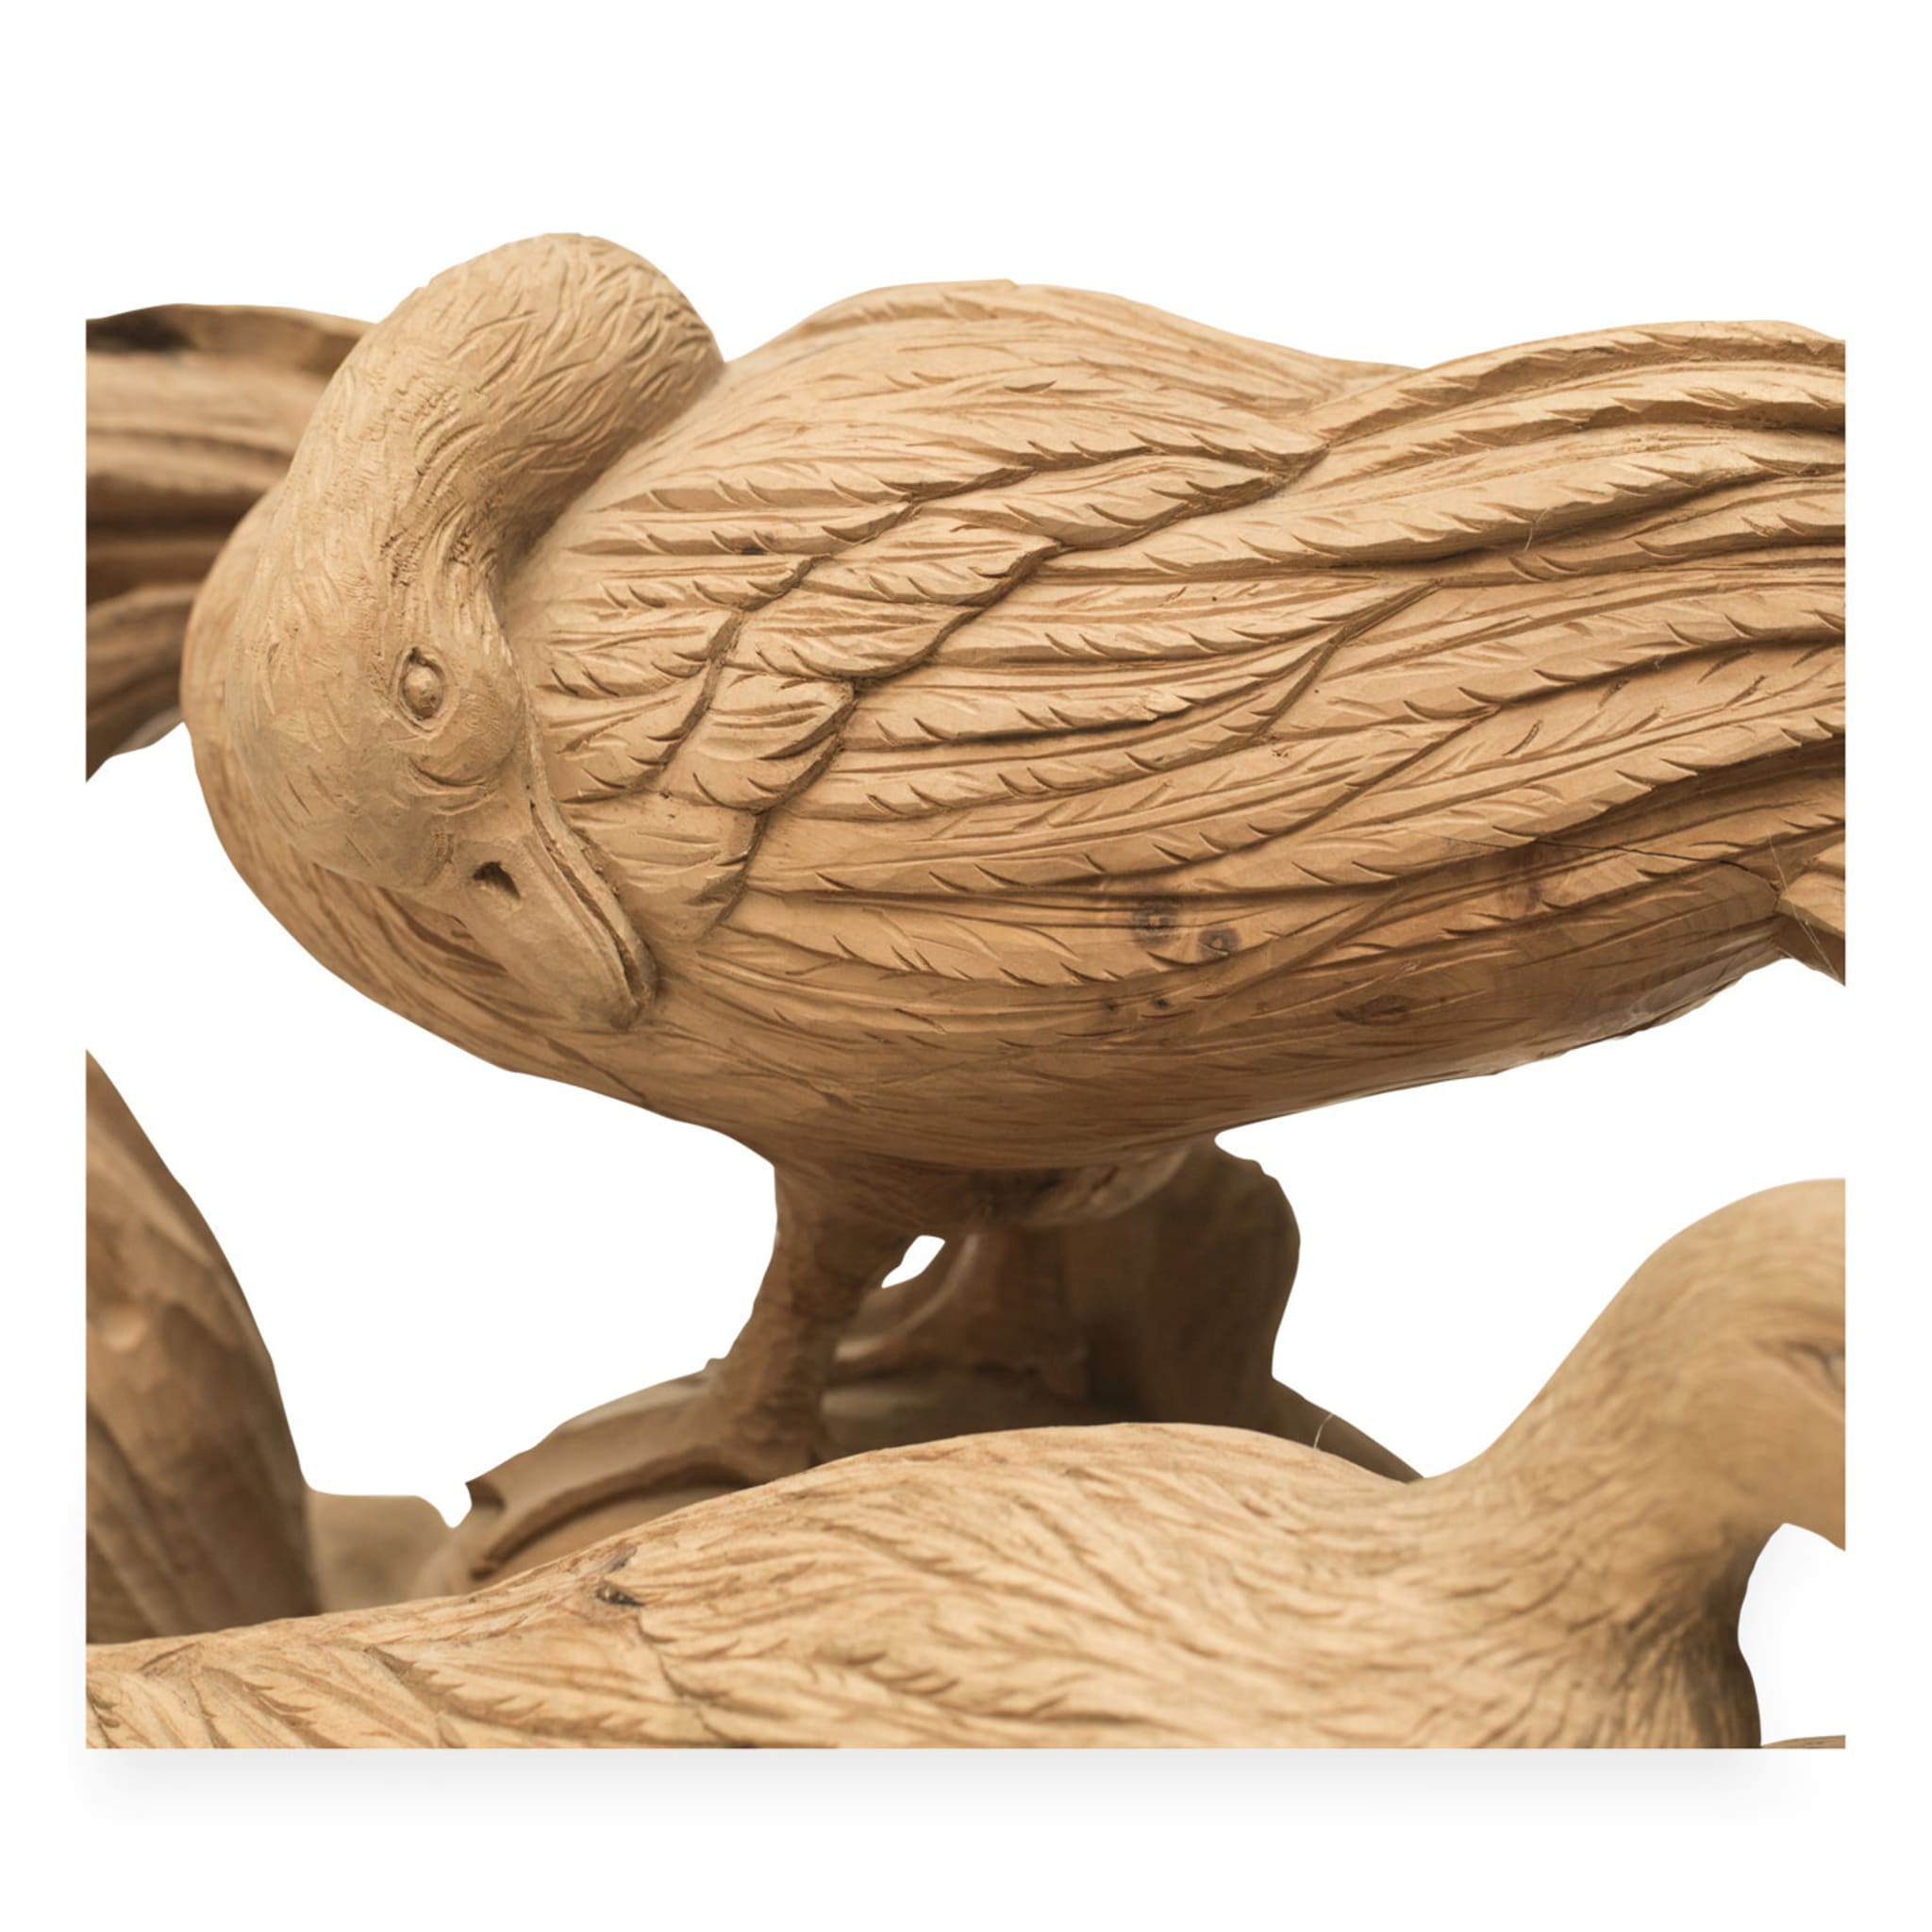 Gioco di Uccelli Wood Sculpture - Alternative view 2